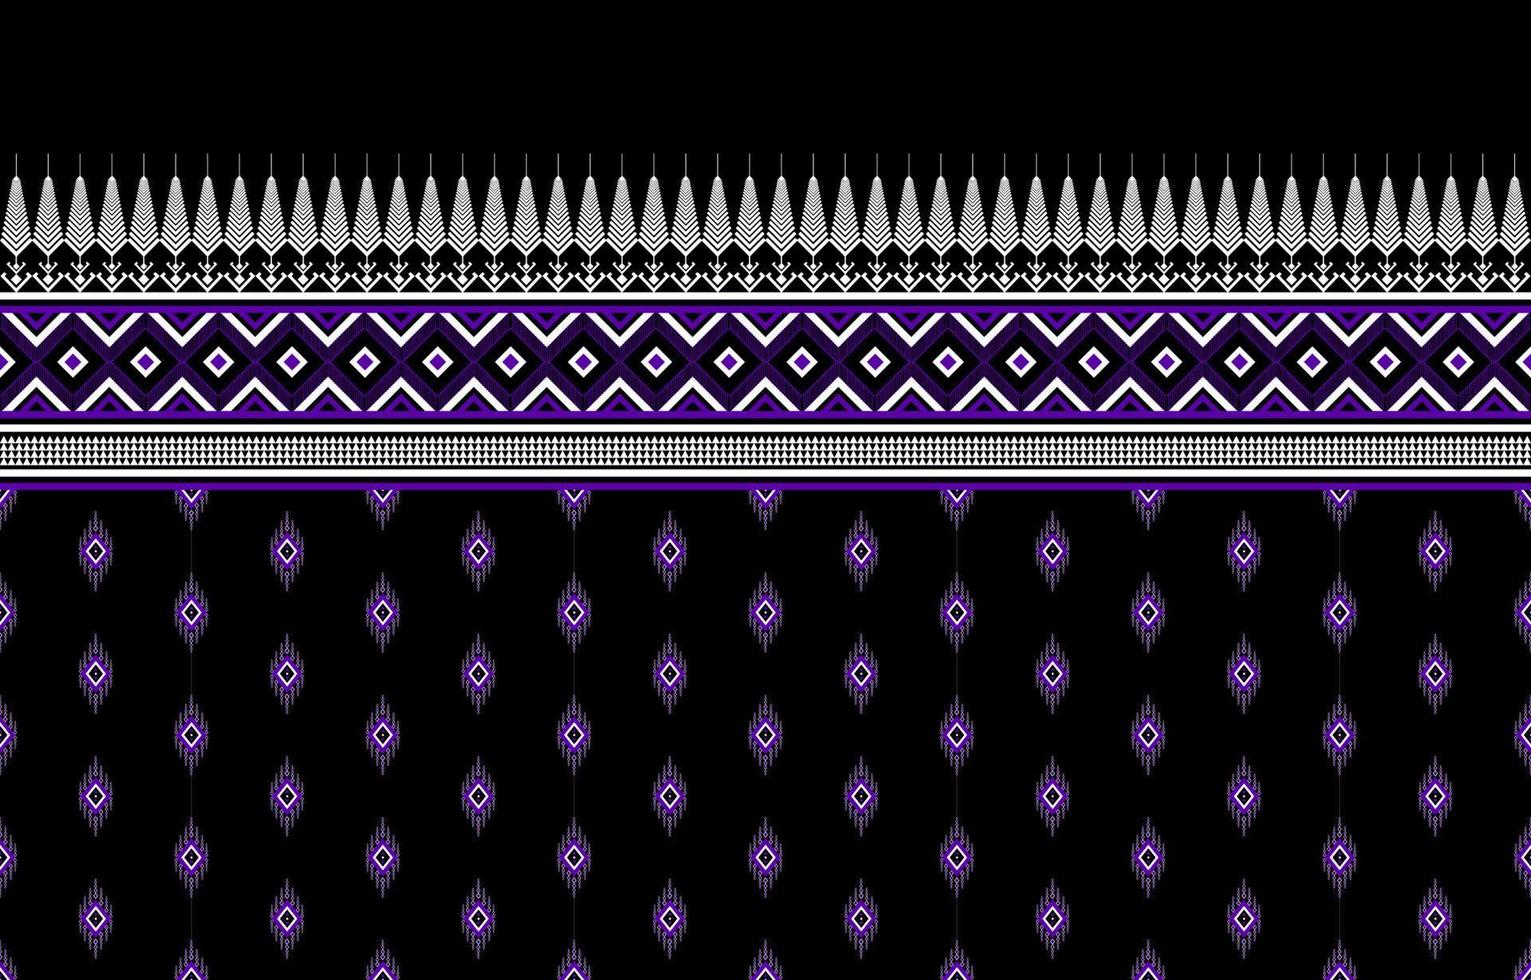 design tradicional de padrão étnico geométrico para plano de fundo,tapete,papel de parede,vestuário,embrulho,batik,tecido,sarong,ilustração,bordado,estilo. vetor